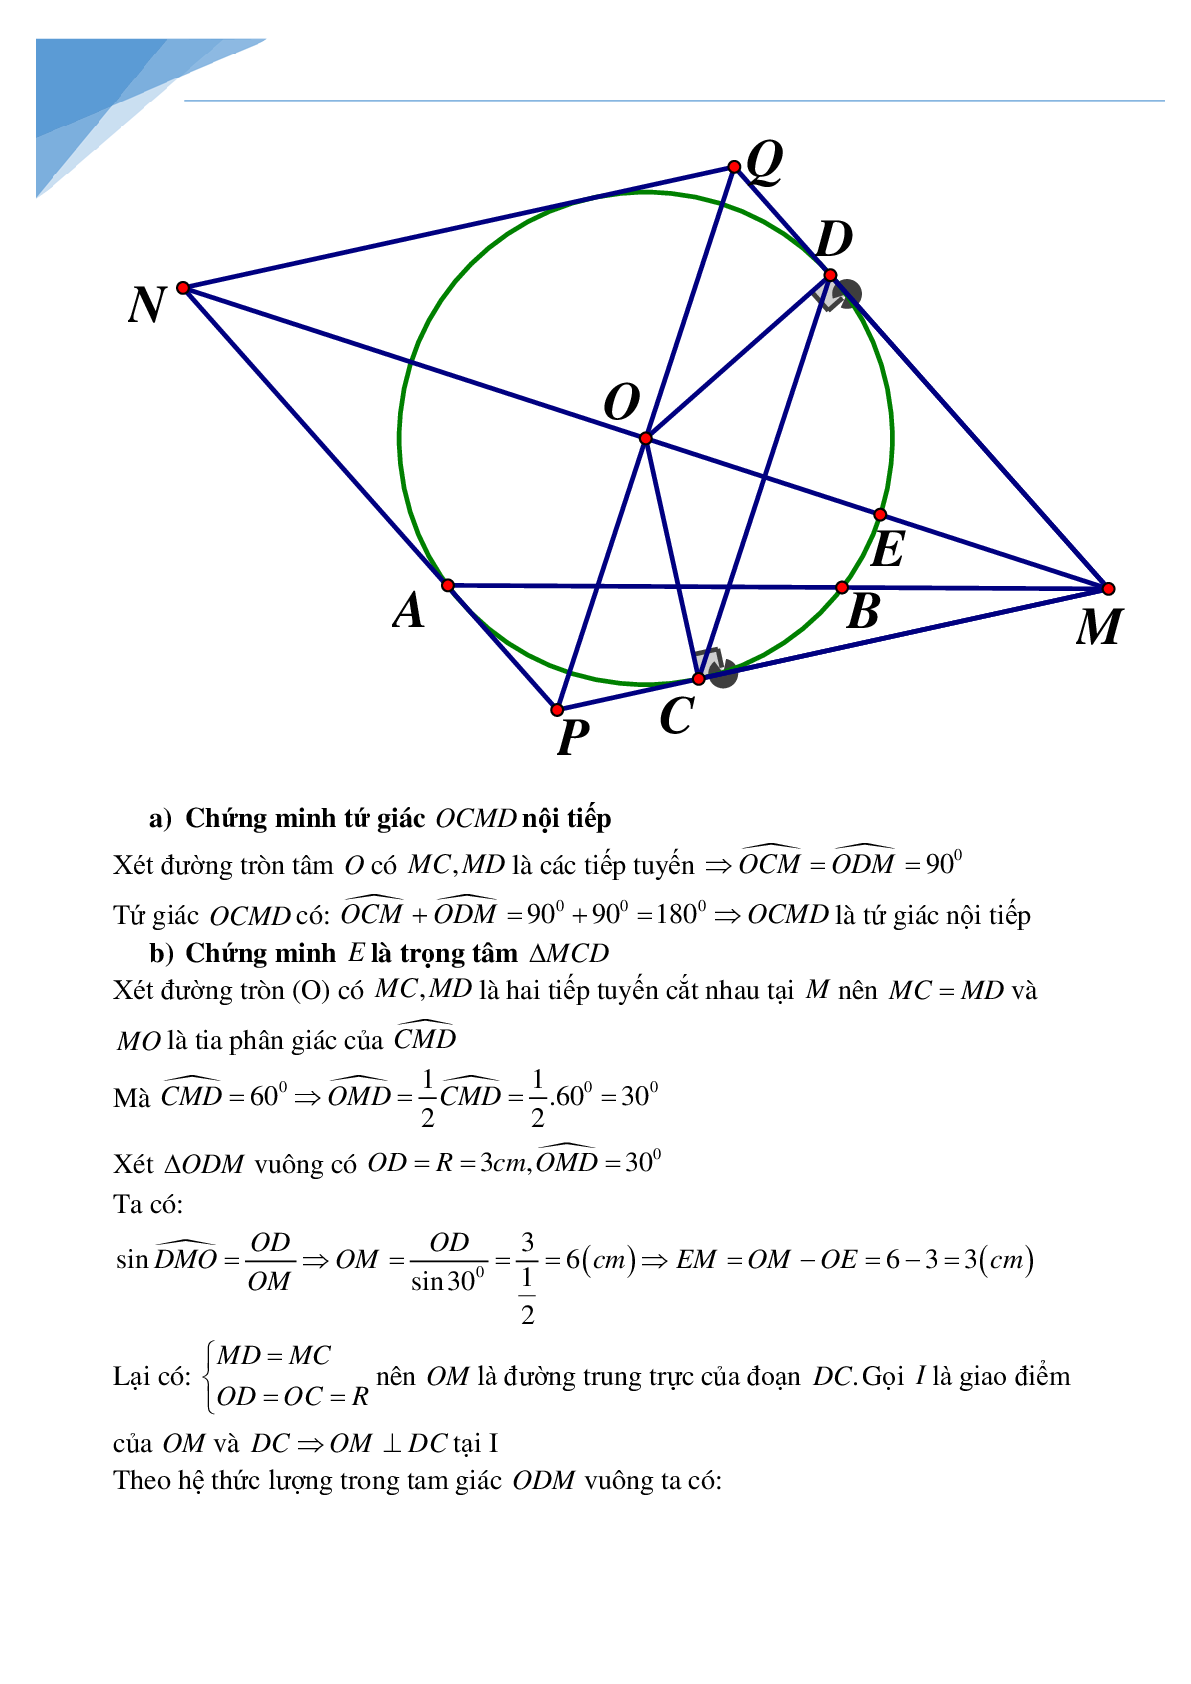 Bộ đề toán vào lớp 10 tỉnh Bắc Giang (trang 6)